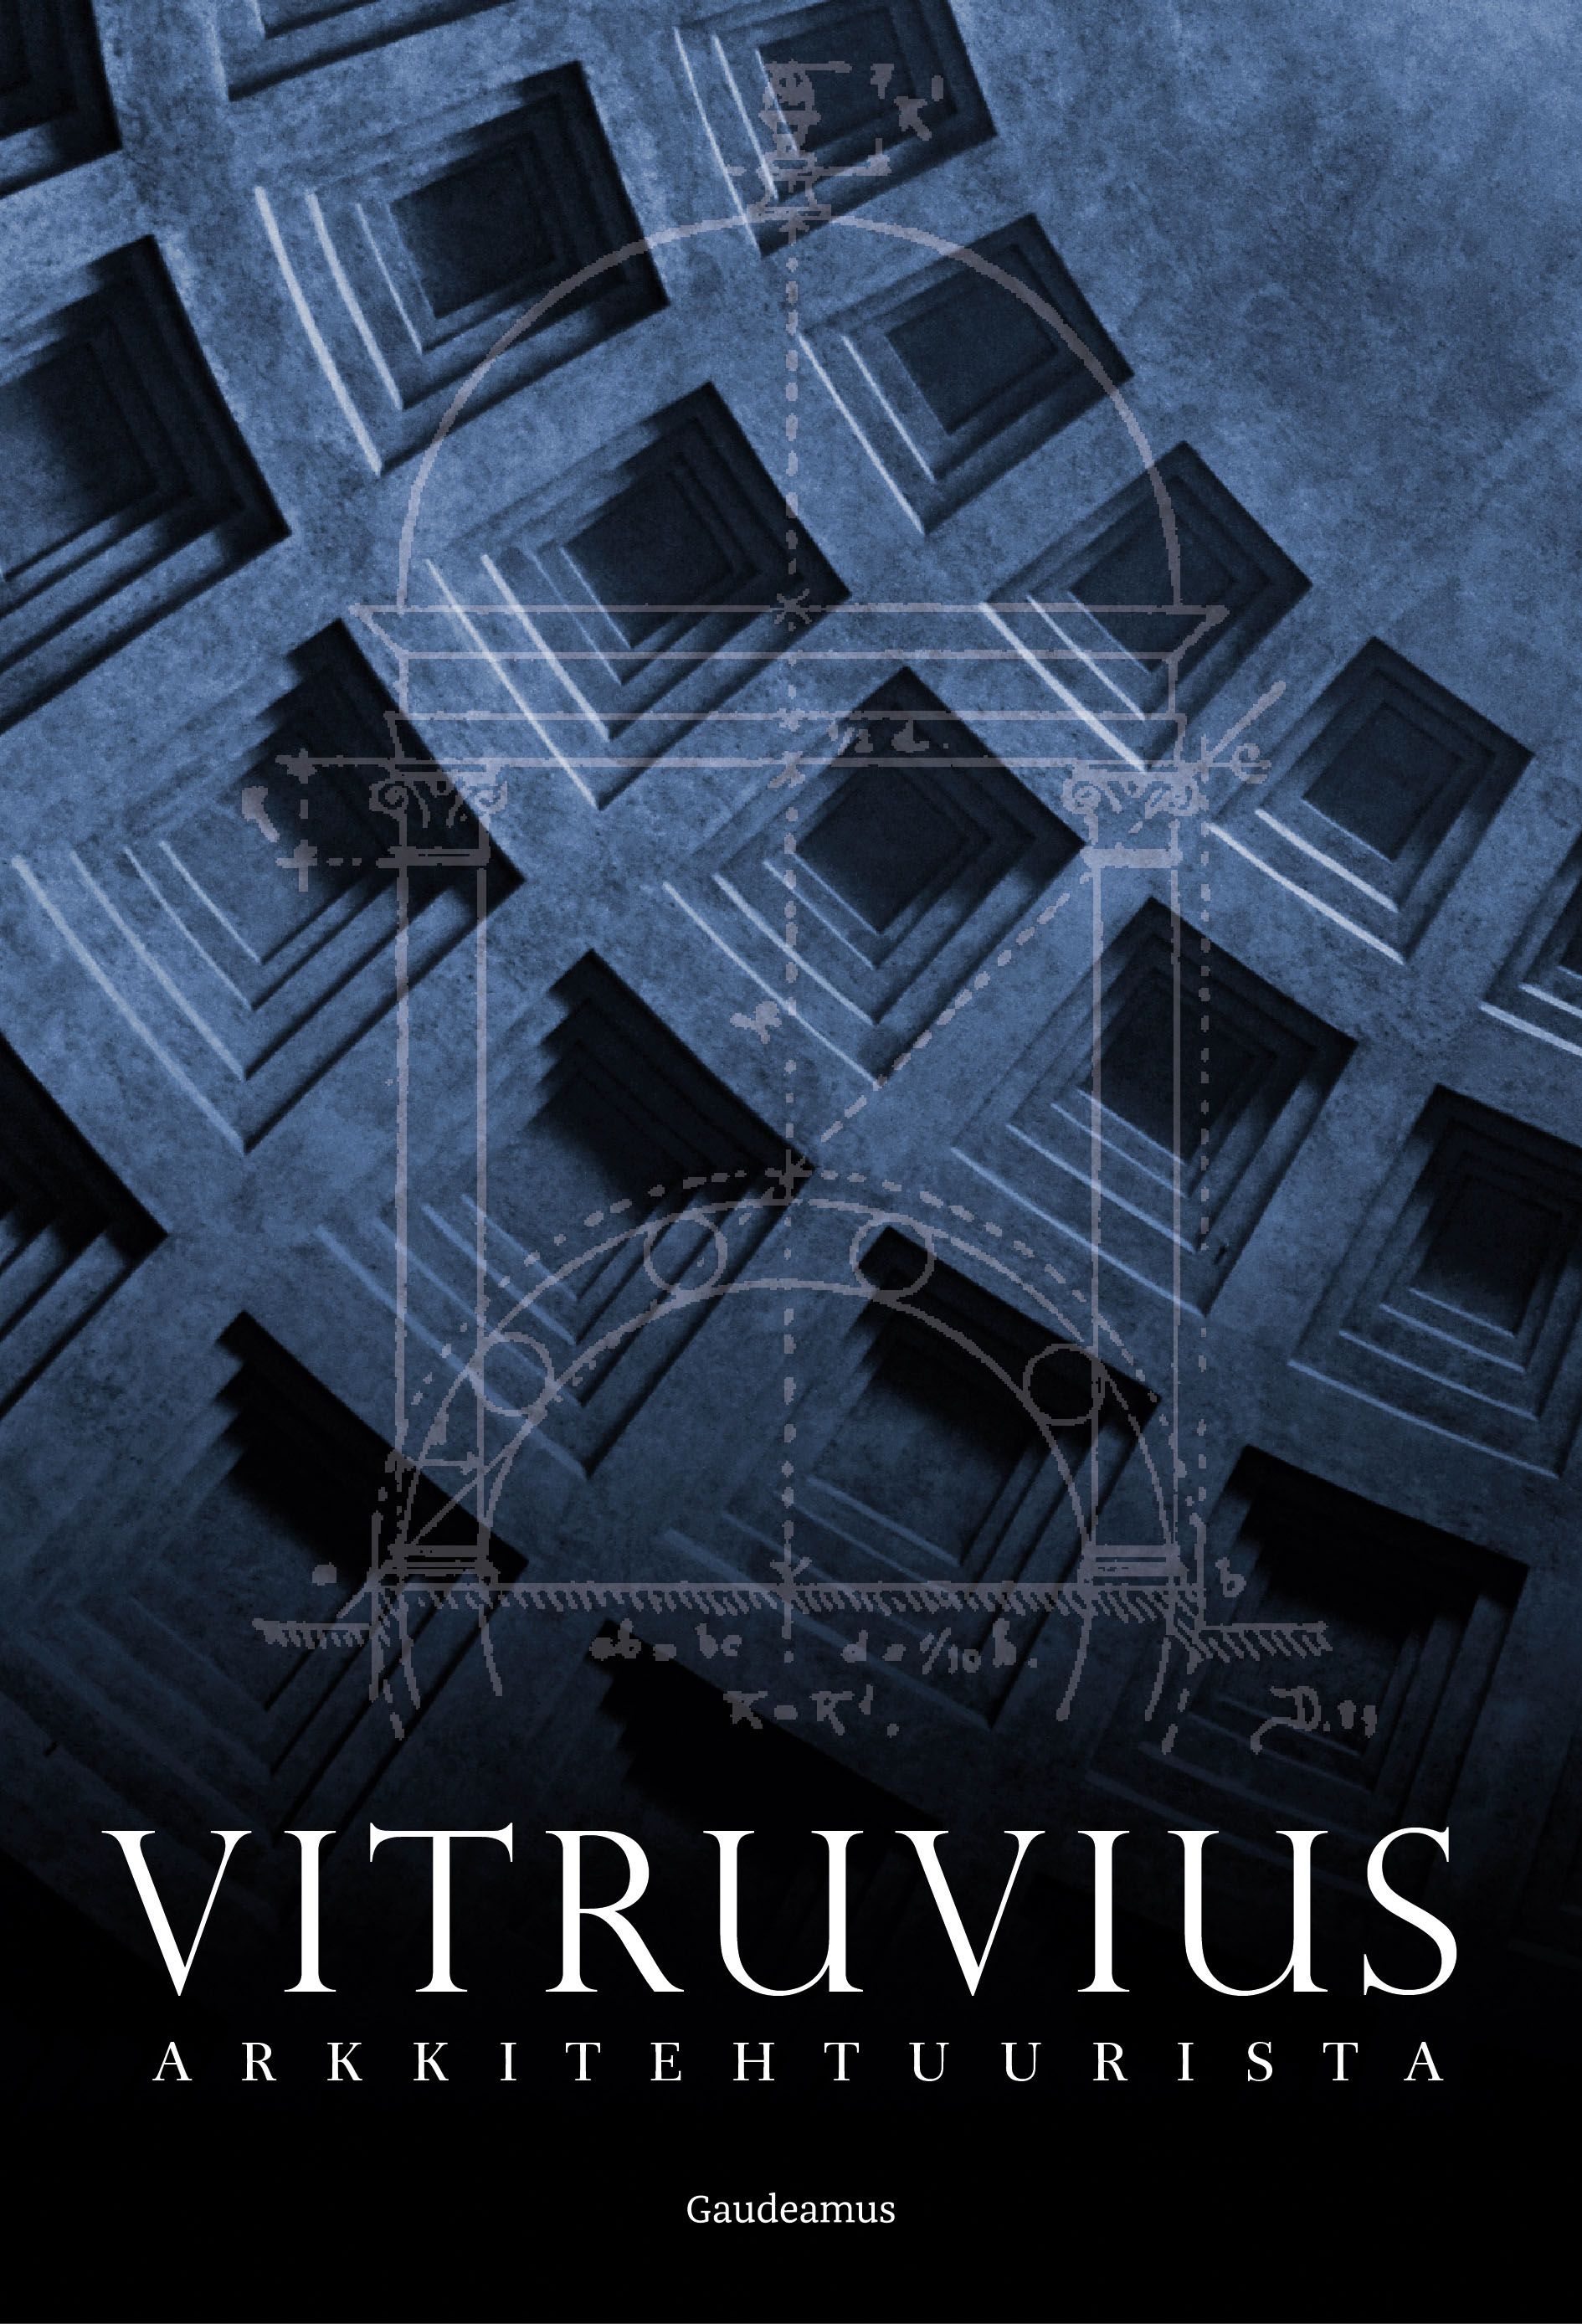 Kirjailijan Marcus Vitruvius Pollio uusi kirja Arkkitehtuurista (UUSI)